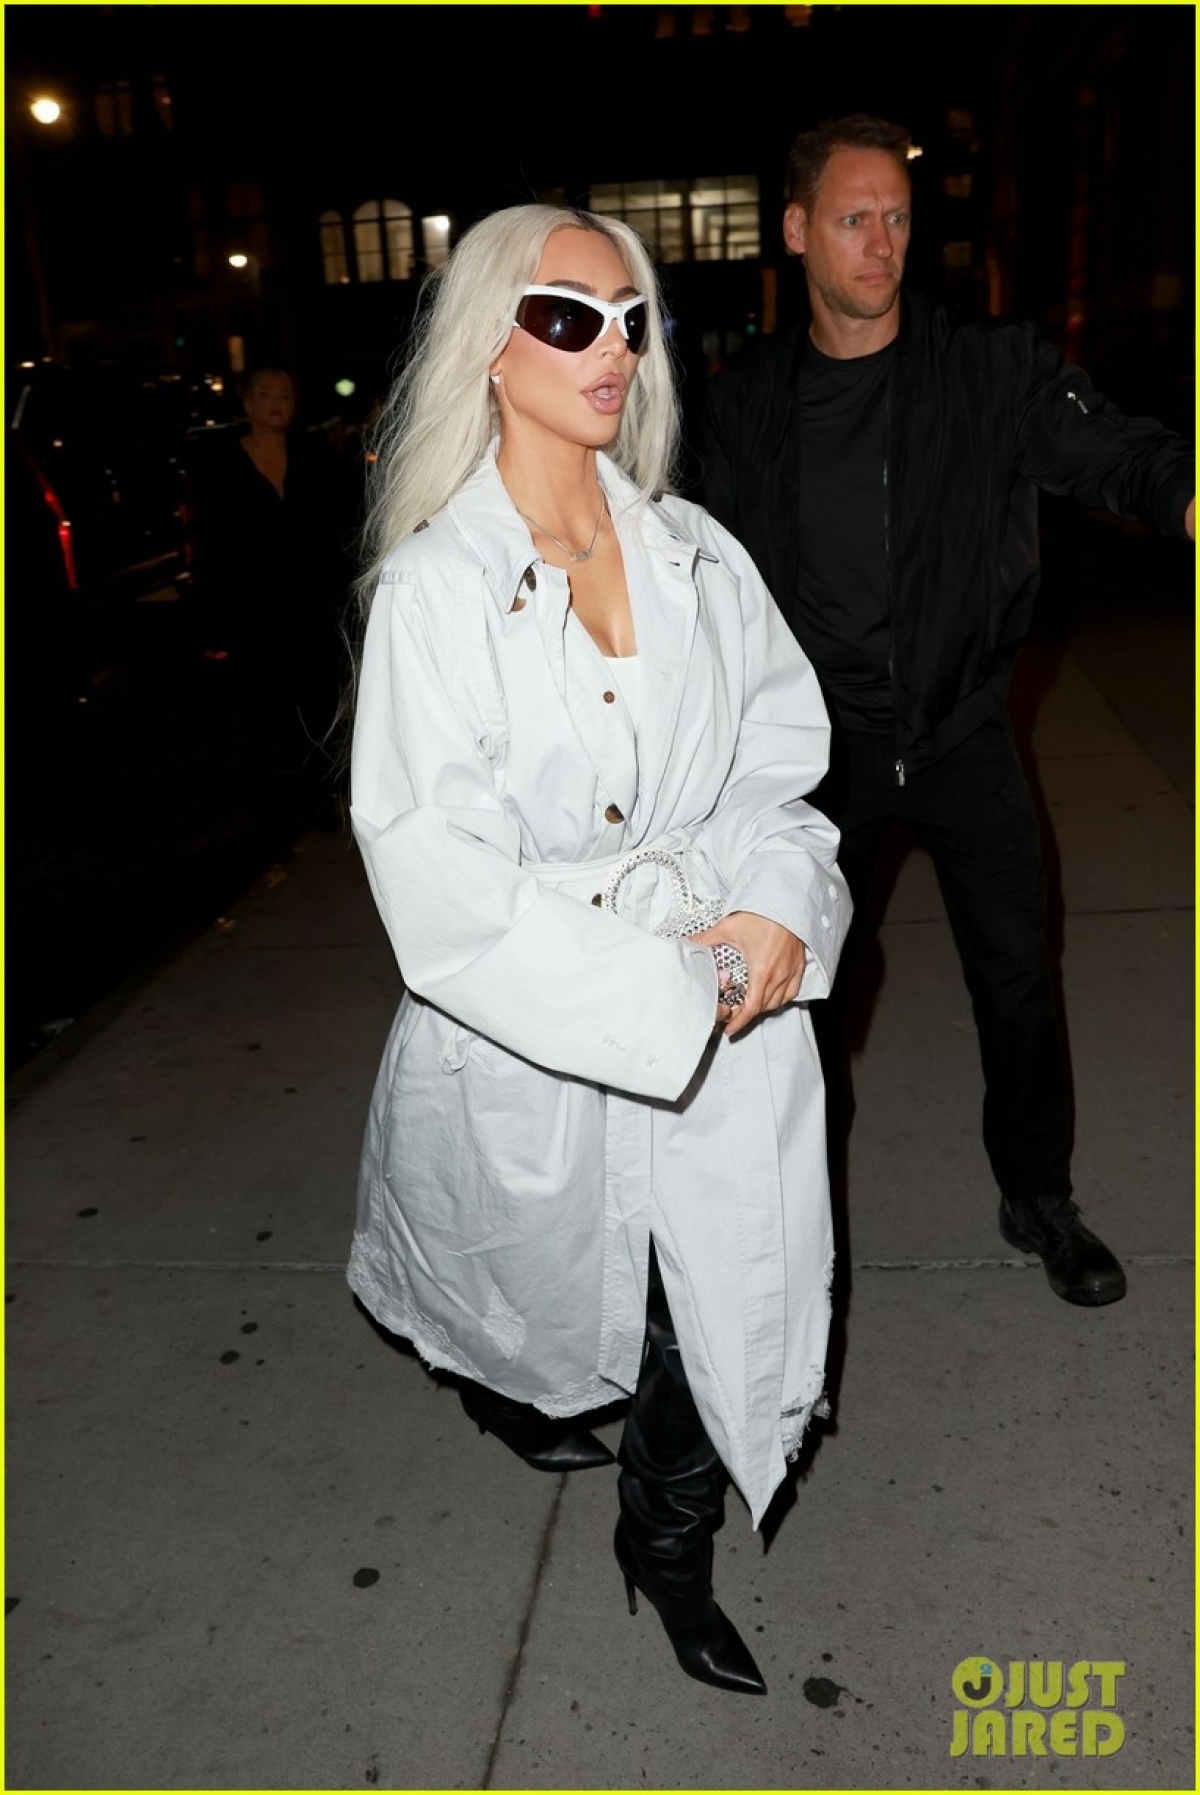 Kim Kardashian nhuộm tóc bạch kim, lên đồ sành điệu đi ăn tối cùng bạn bè - Ảnh 8.